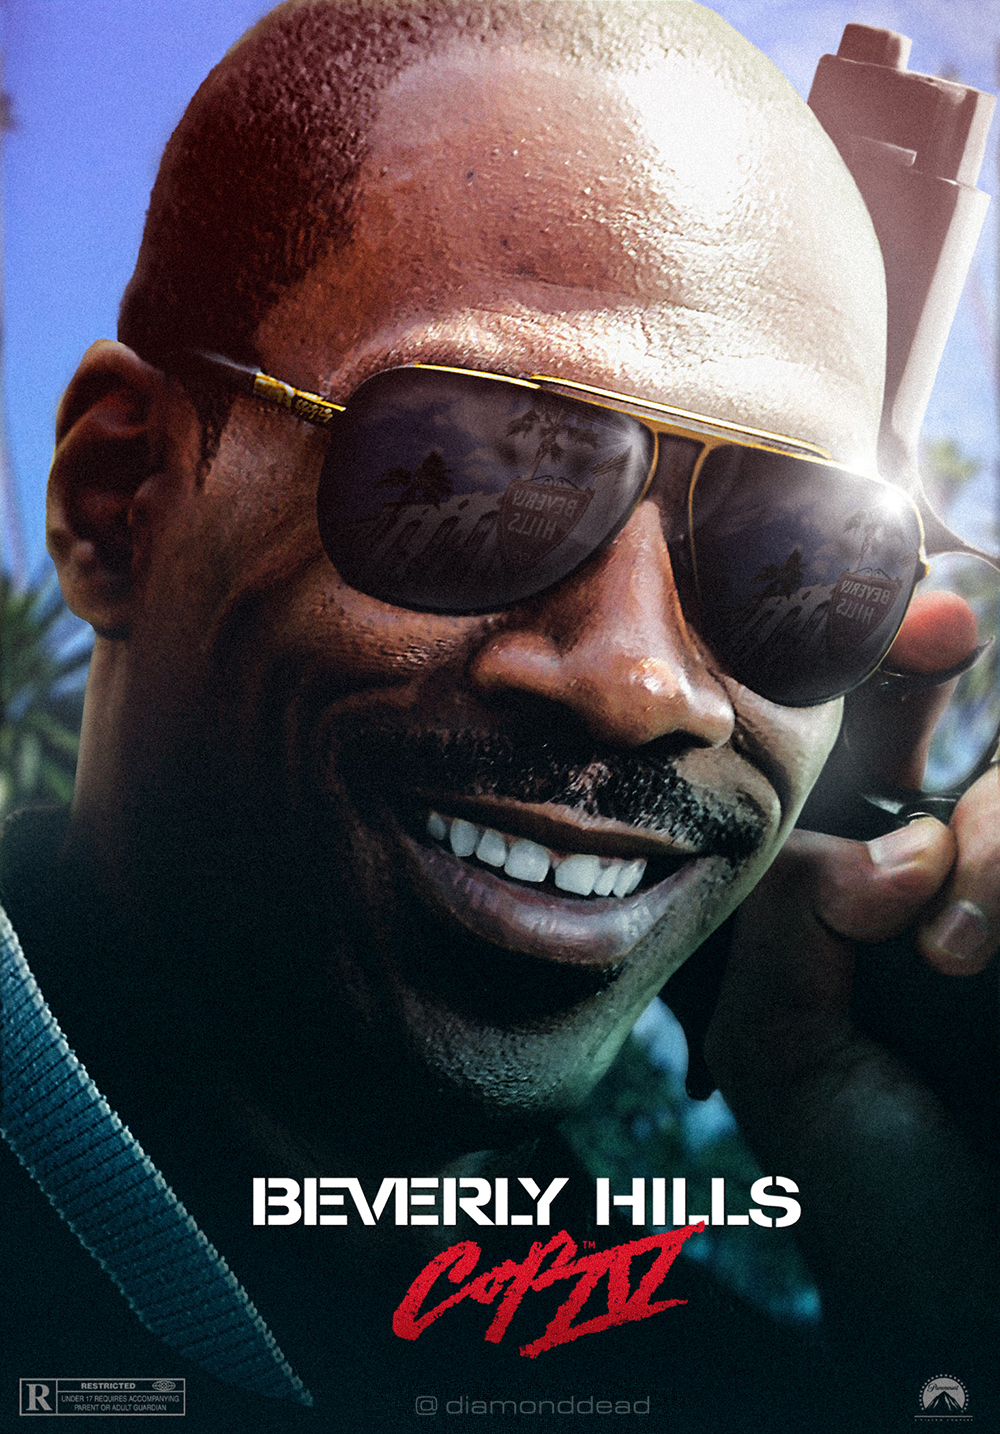 Beverly Hills Cop 4 by diamonddeadArt on DeviantArt